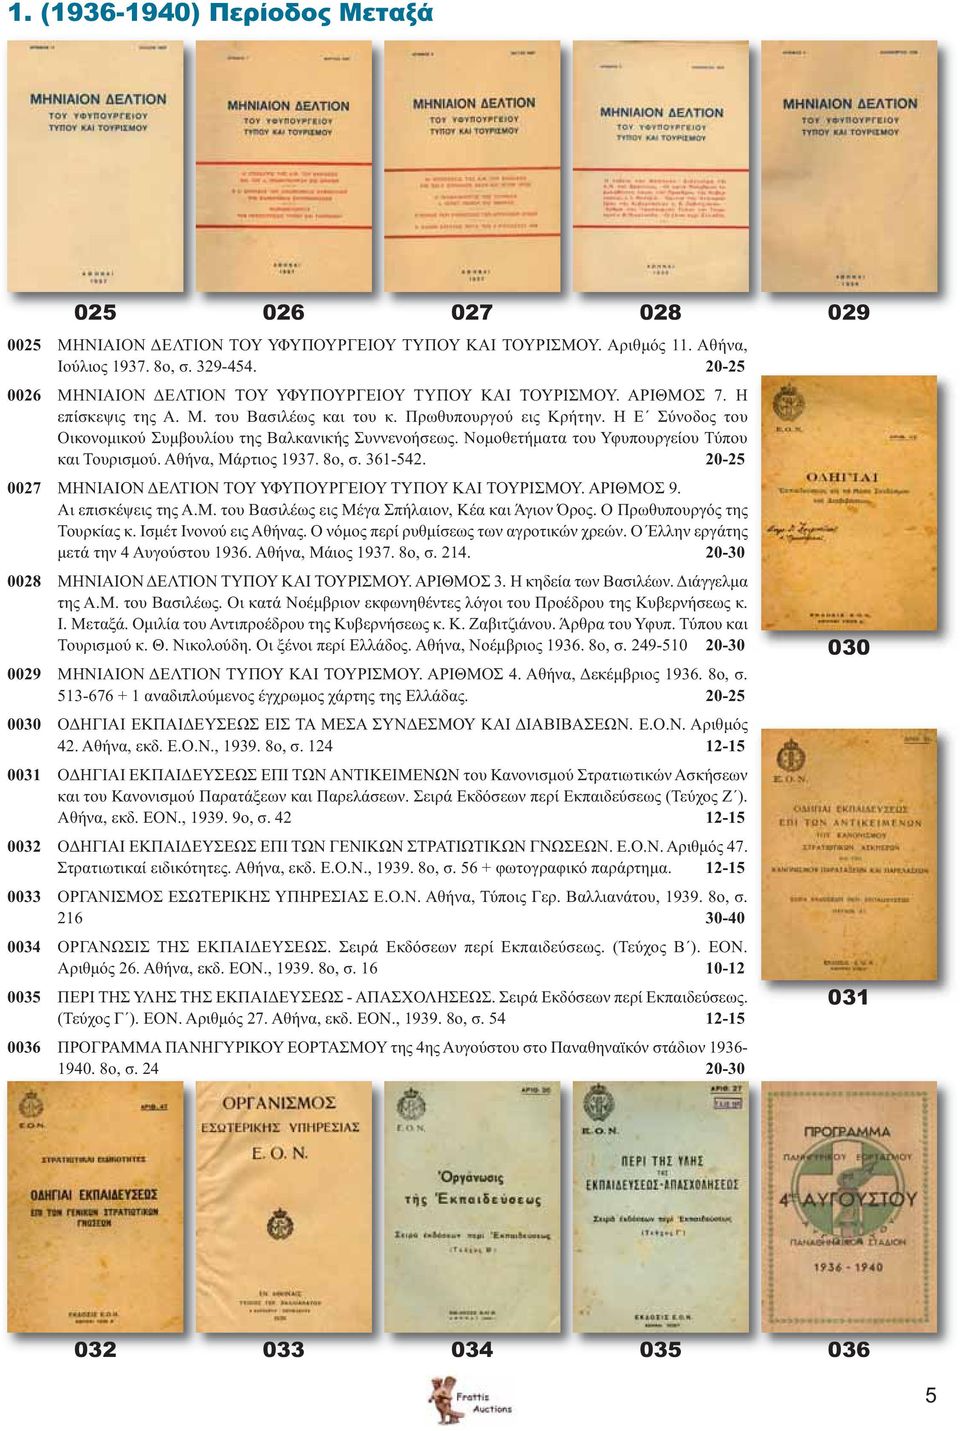 Η Ε Σύνοδος του Οικονομικού Συμβουλίου της Βαλκανικής Συννενοήσεως. Νομοθετήματα του Υφυπουργείου Τύπου και Τουρισμού. Αθήνα, Μάρτιος 1937. 8ο, σ. 361-542.